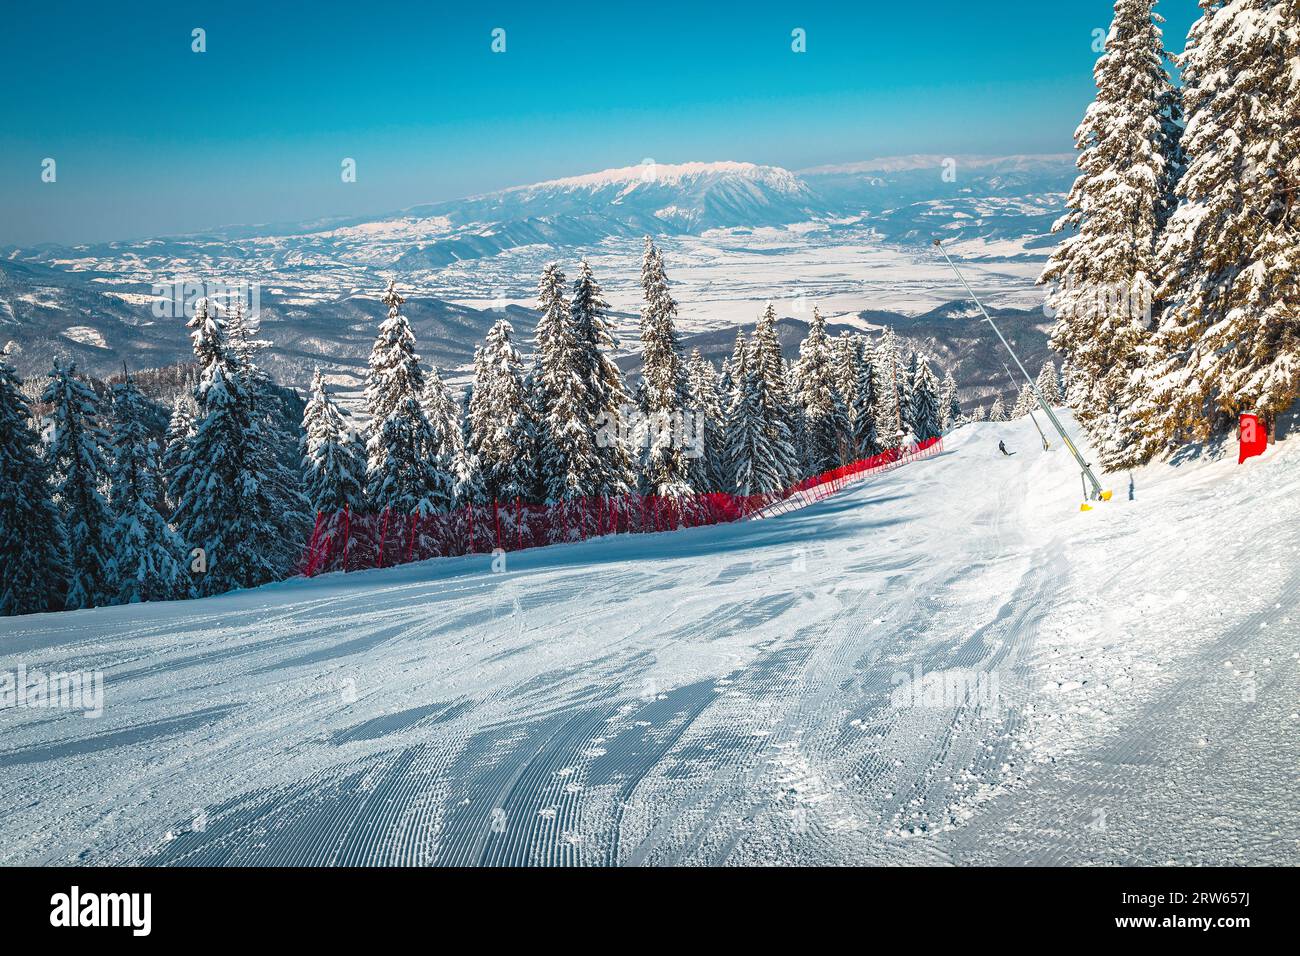 Itinéraire de ski fraîchement préparé avec canons à neige et forêt de pins enneigés dans la station de ski Poiana Brasov, Transylvanie, Roumanie, Europe Banque D'Images